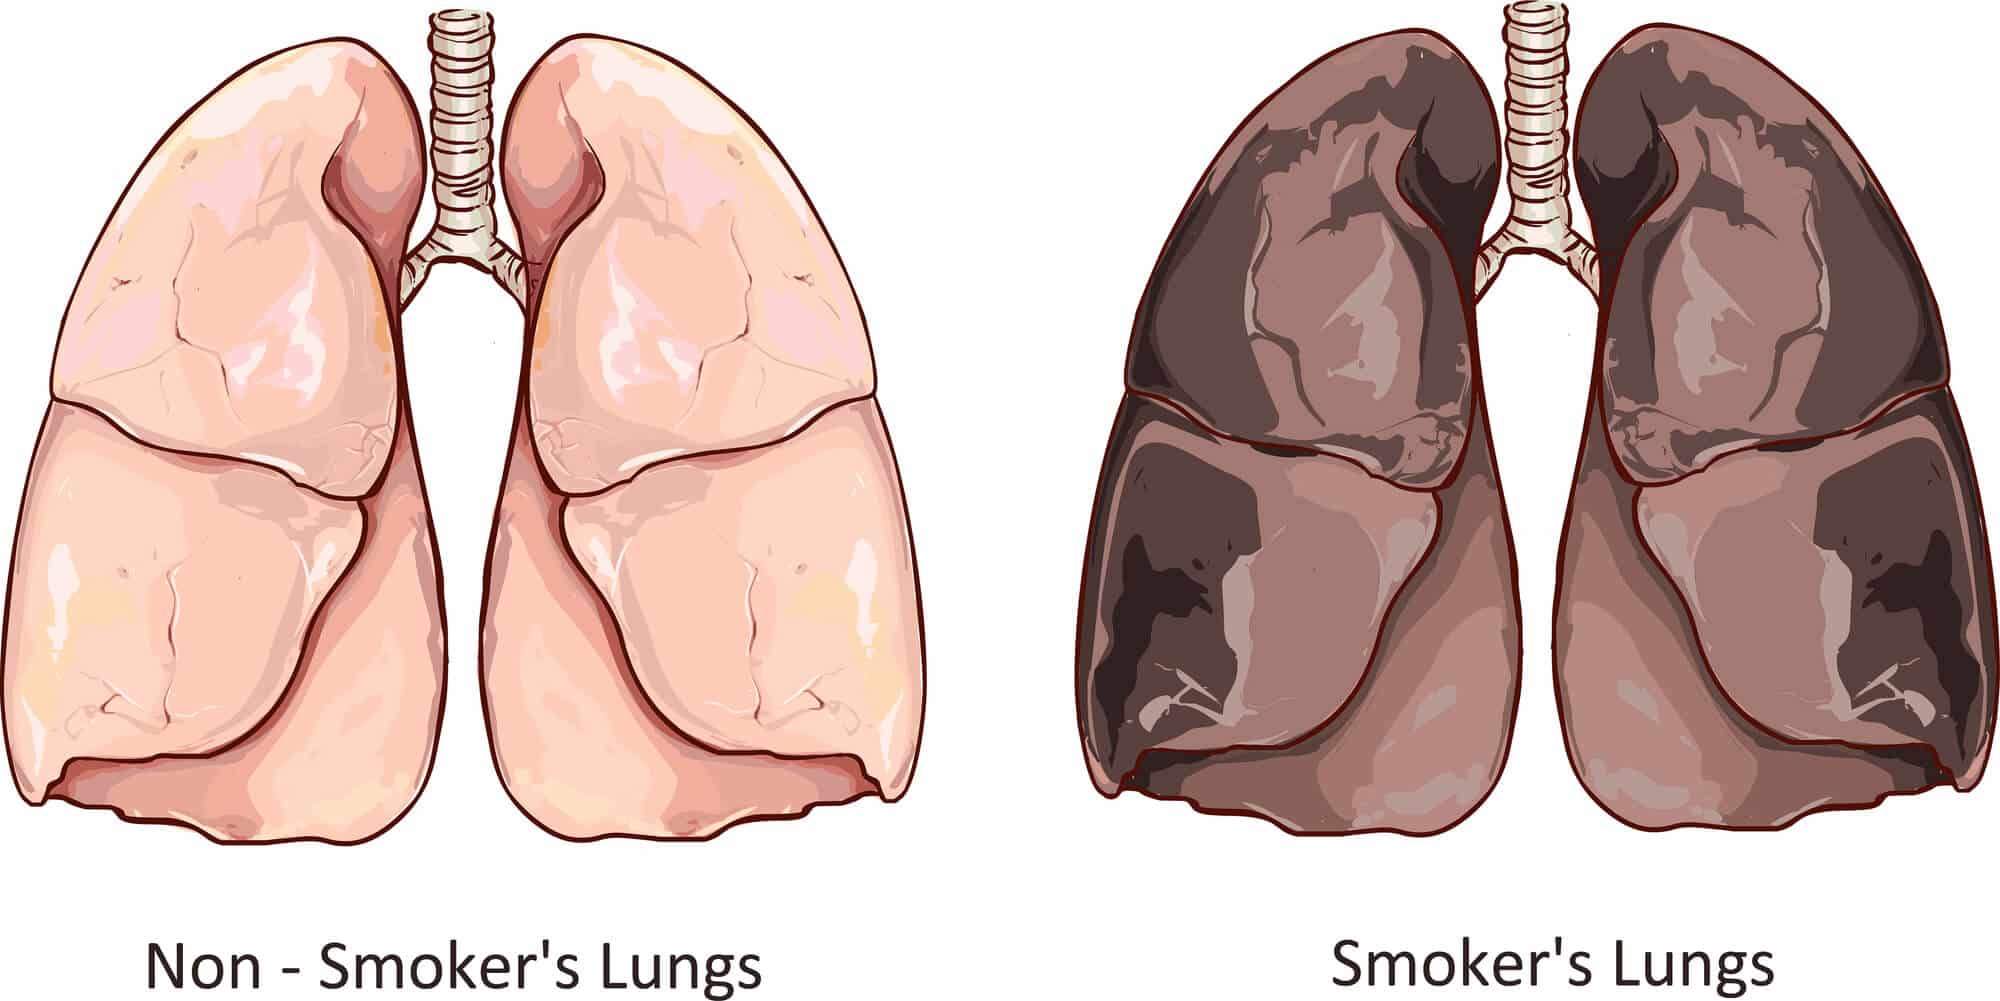 رئة المدخن مقارنة بالرئة النظيفة. الرسم التوضيحي: موقع Depositphotos.com